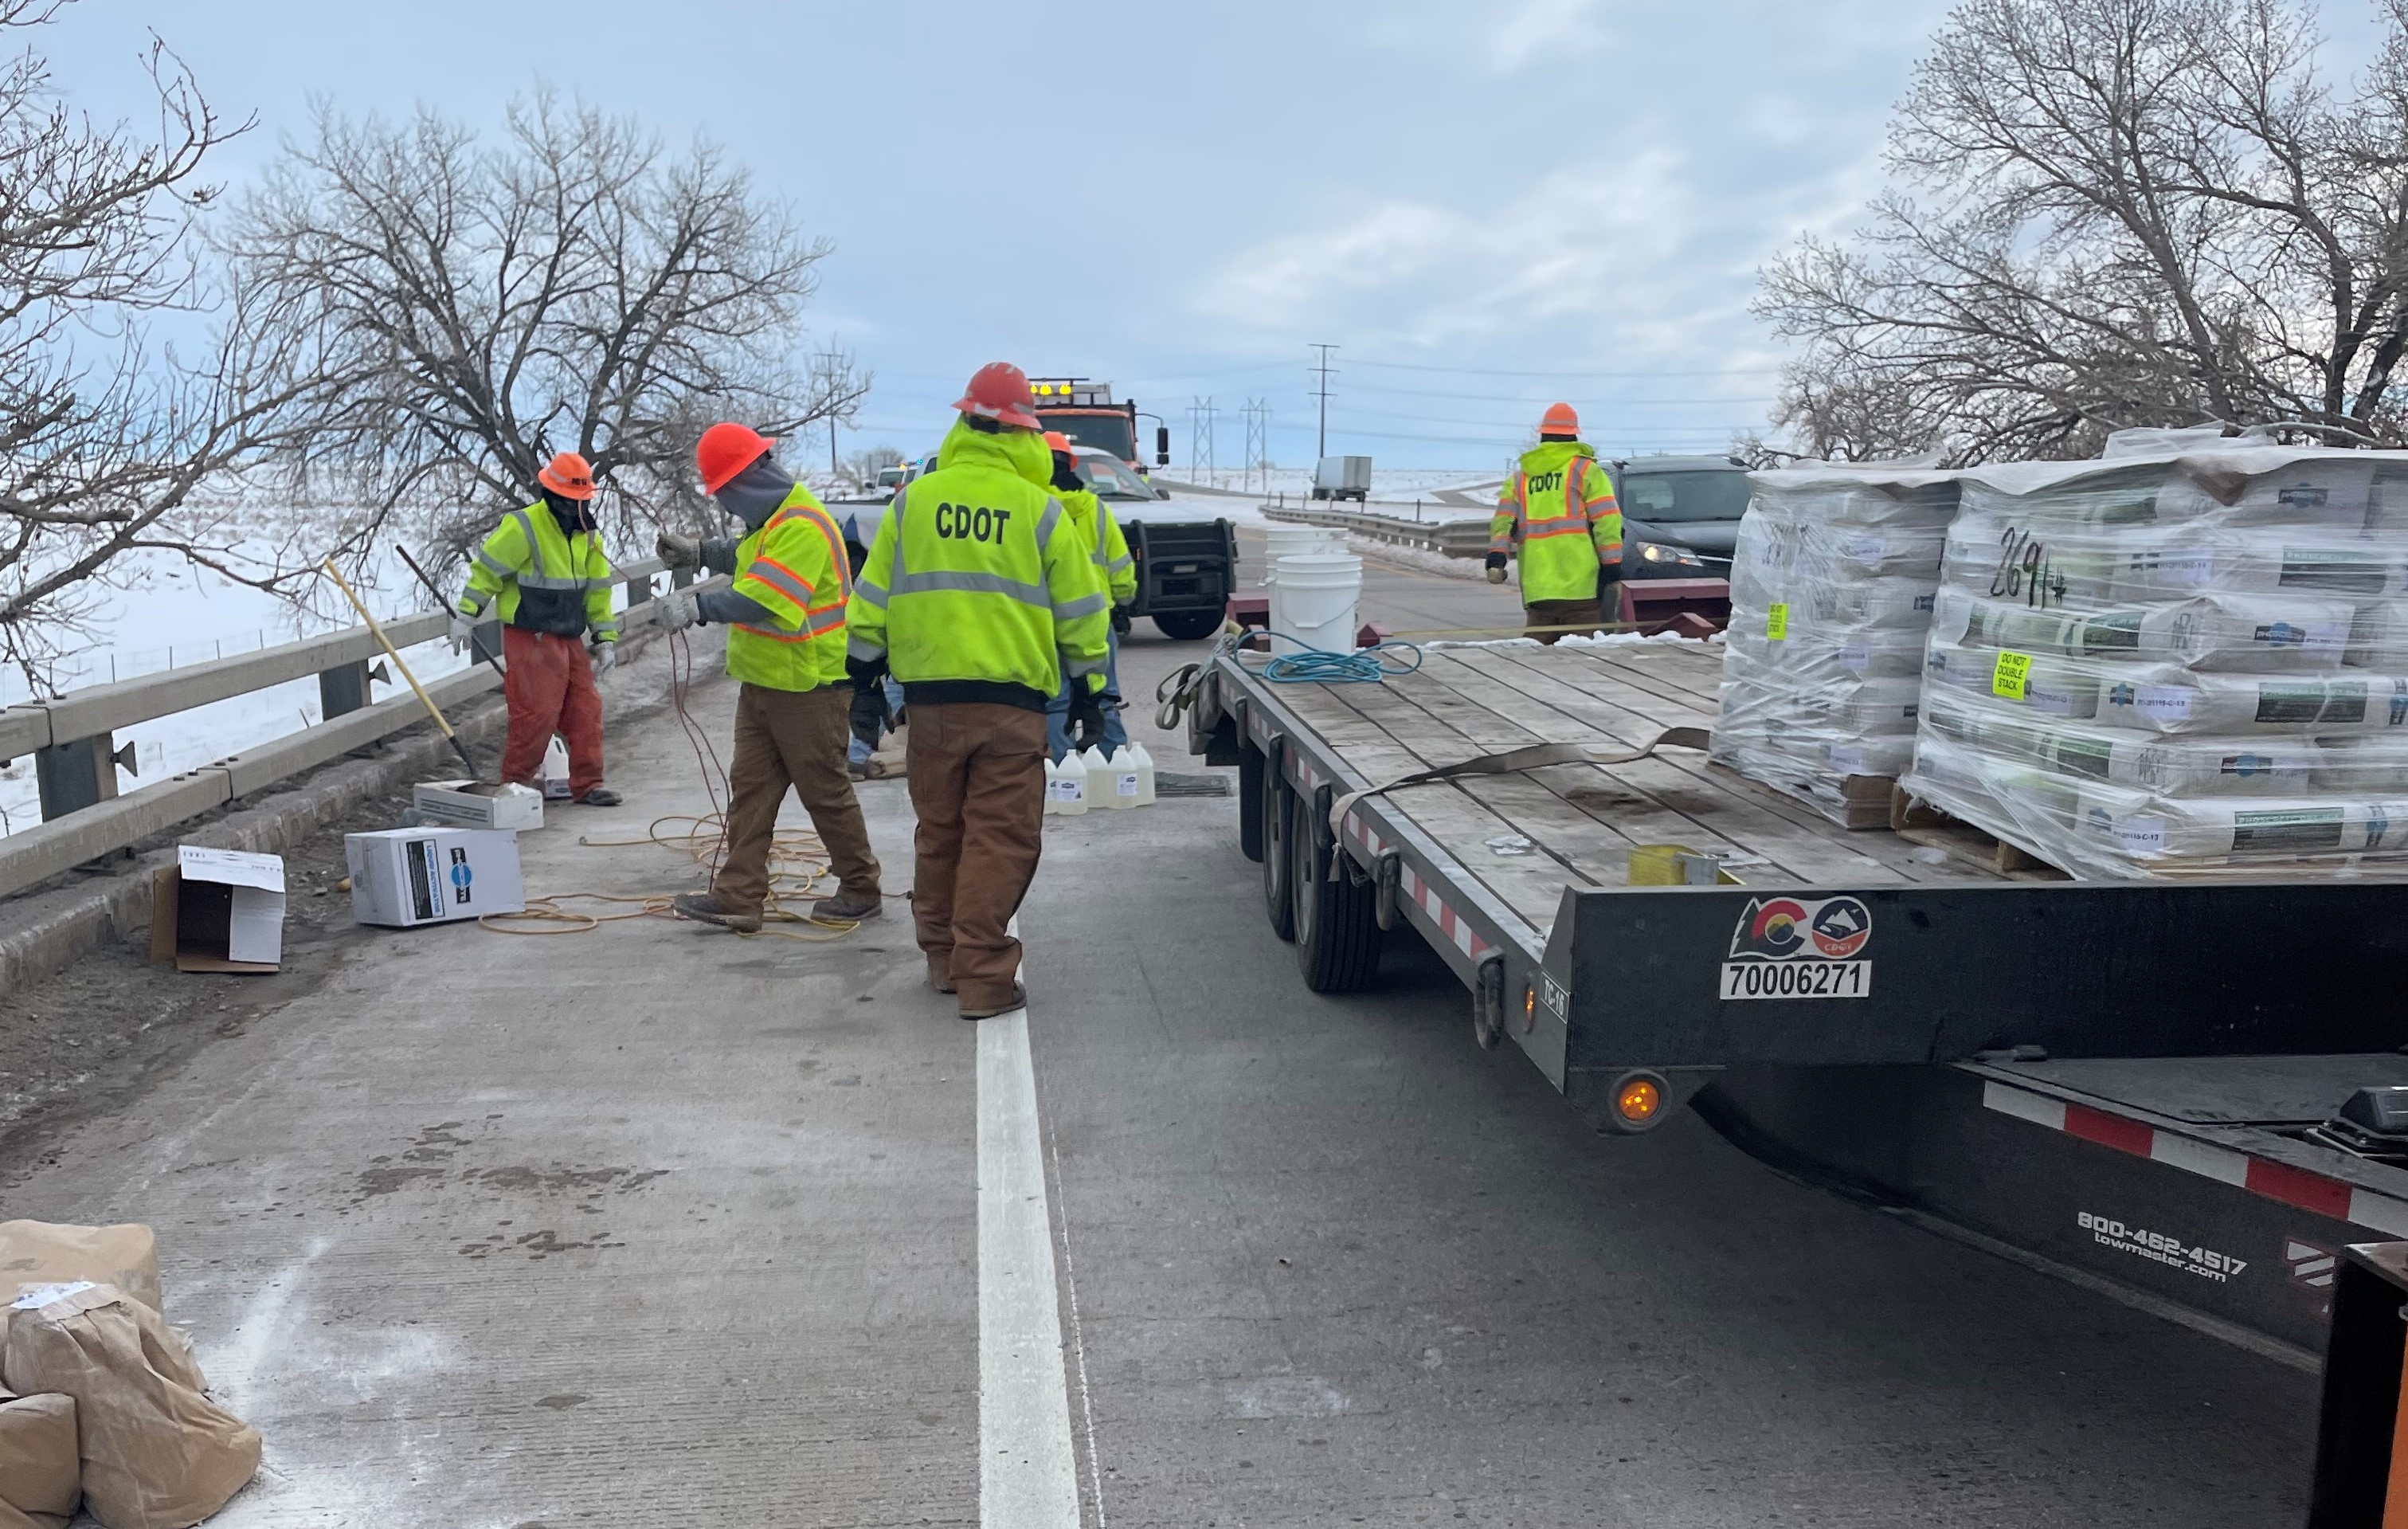 CDOT crews with truck and materials repairing bridge.jpg detail image